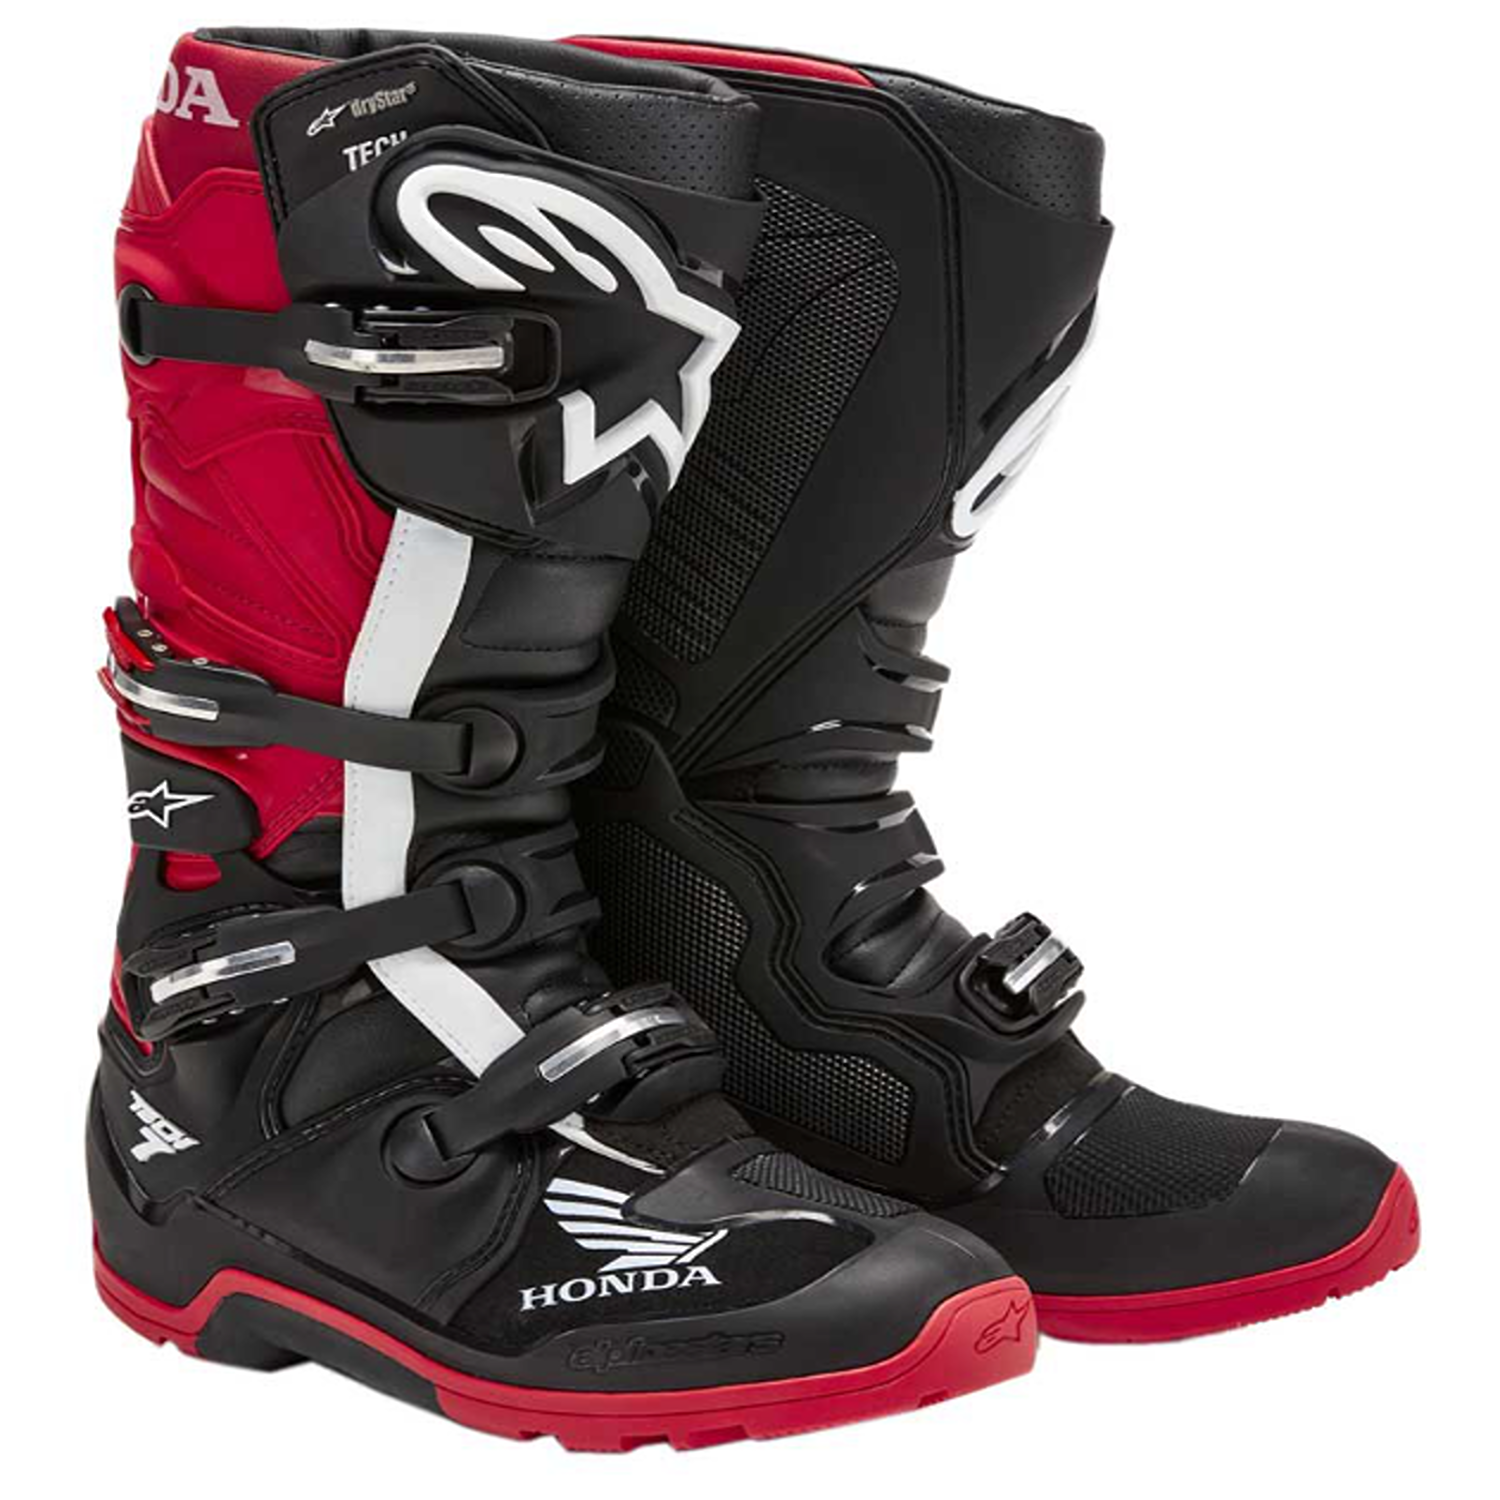 Image of Alpinestars Honda Tech 7 Enduro Drystar Boots Black Bright Red Size US 13 EN